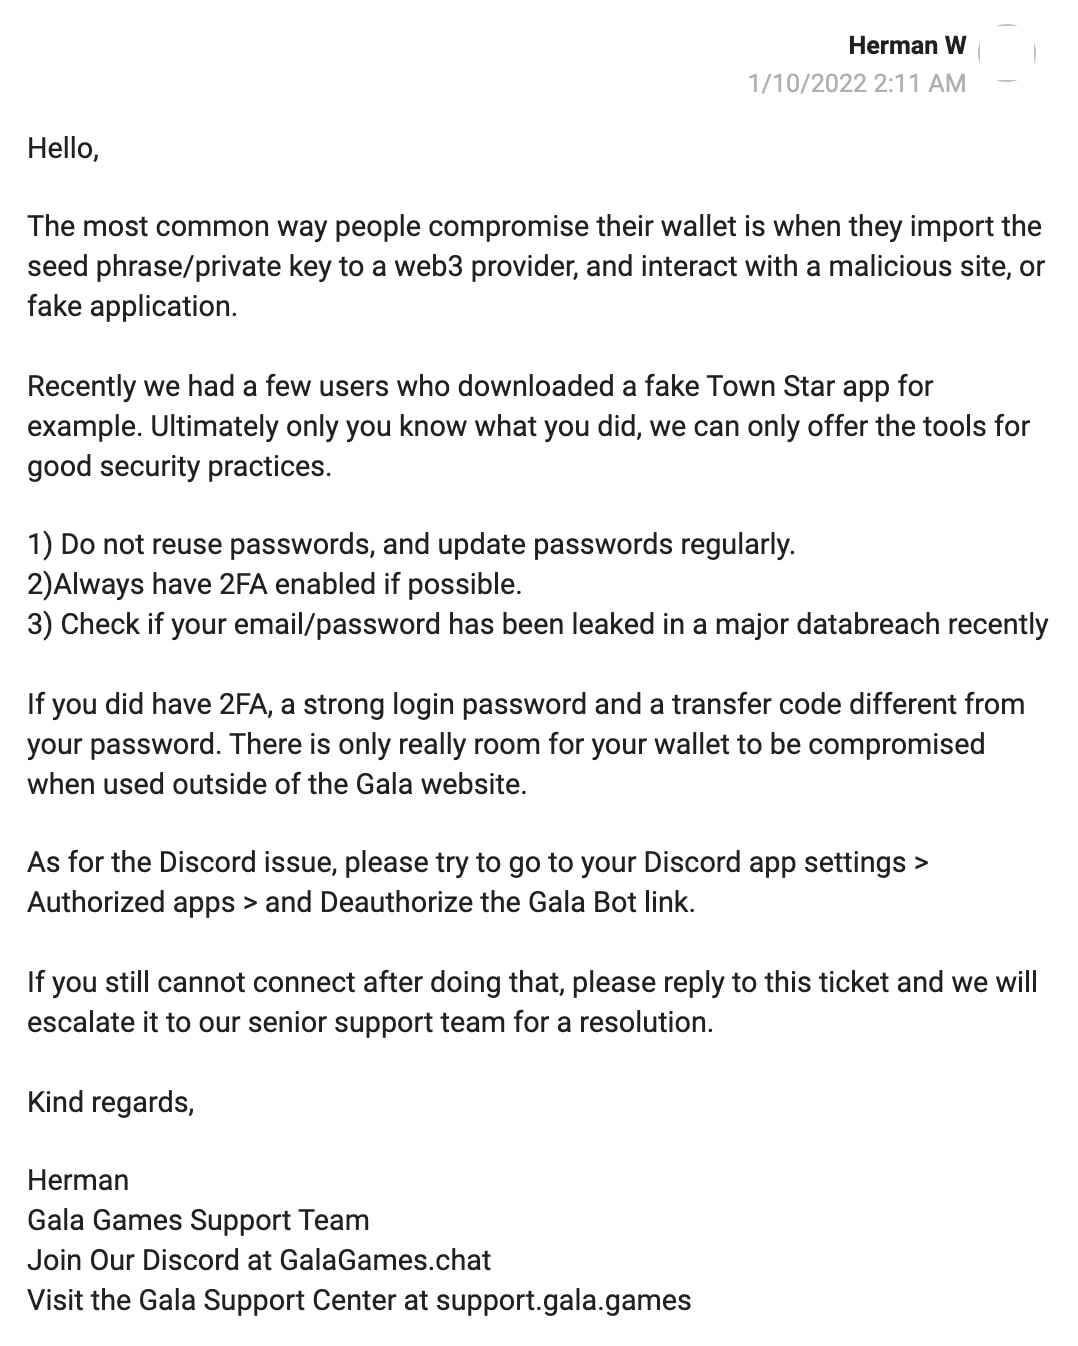 Réponse par e-mail de Gala Games à la victime du piratage